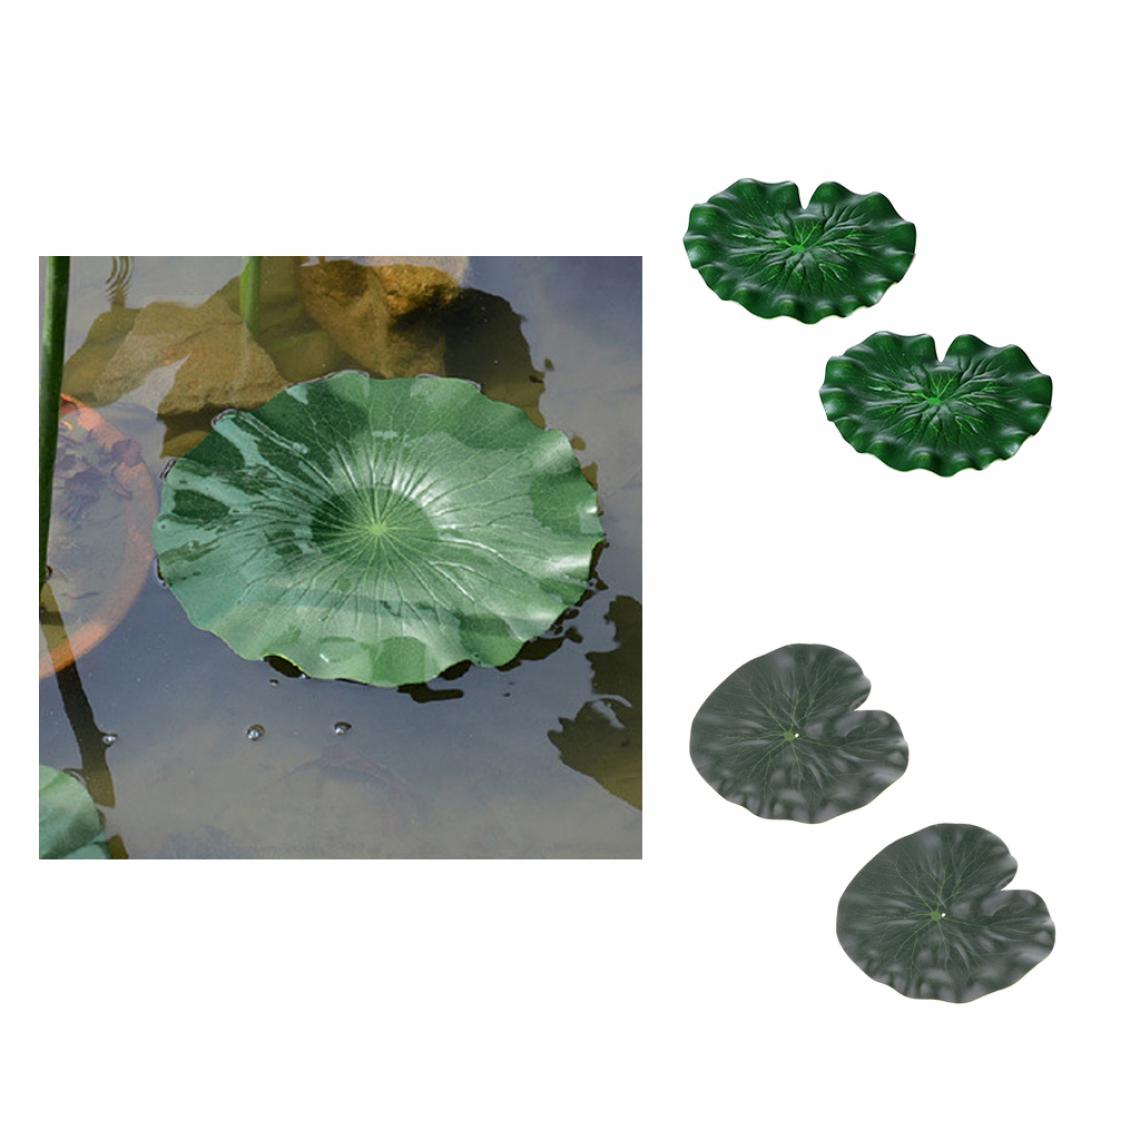 marque generique - 4x Plante Feuilles de Lotus Artificielle en Plastique Vert Décor Aquarium 17cm + 29cm - Décoration aquarium